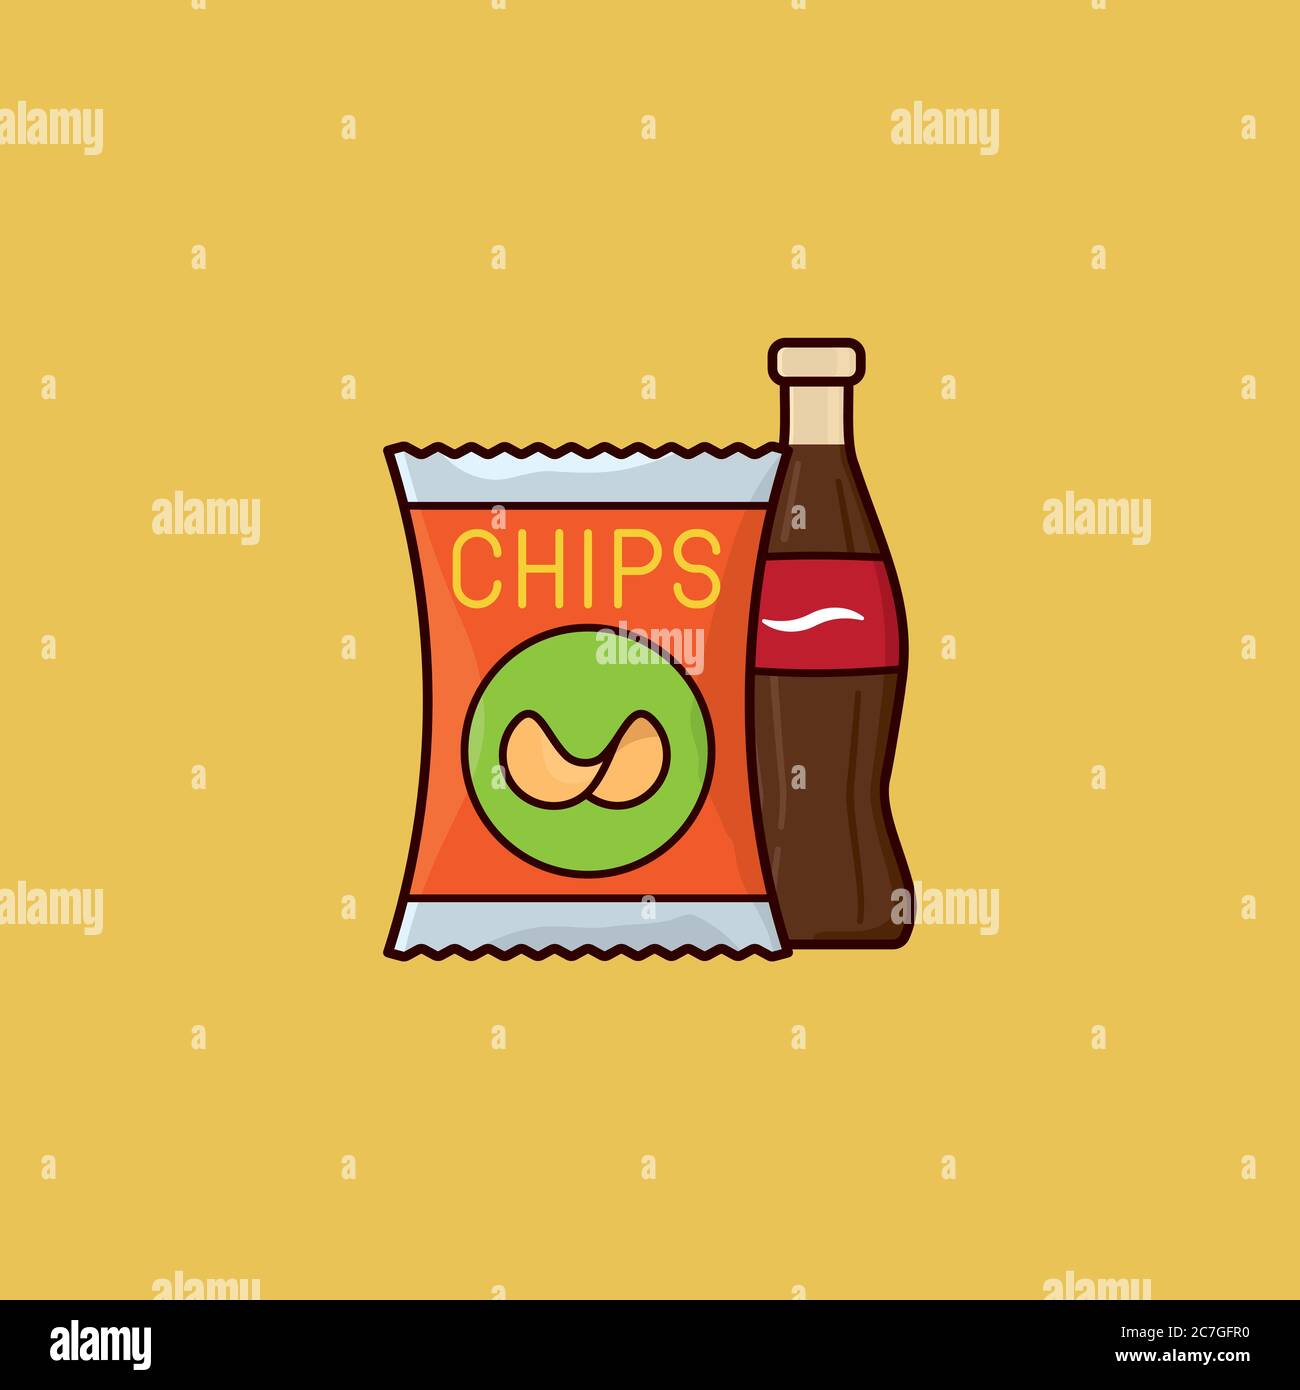 Vektorgrafik für Kartoffelchips und Softdrink-Flaschen zum Junk Food Day am 21. Juli. Ungesunde Ernährung Symbol. Stock Vektor